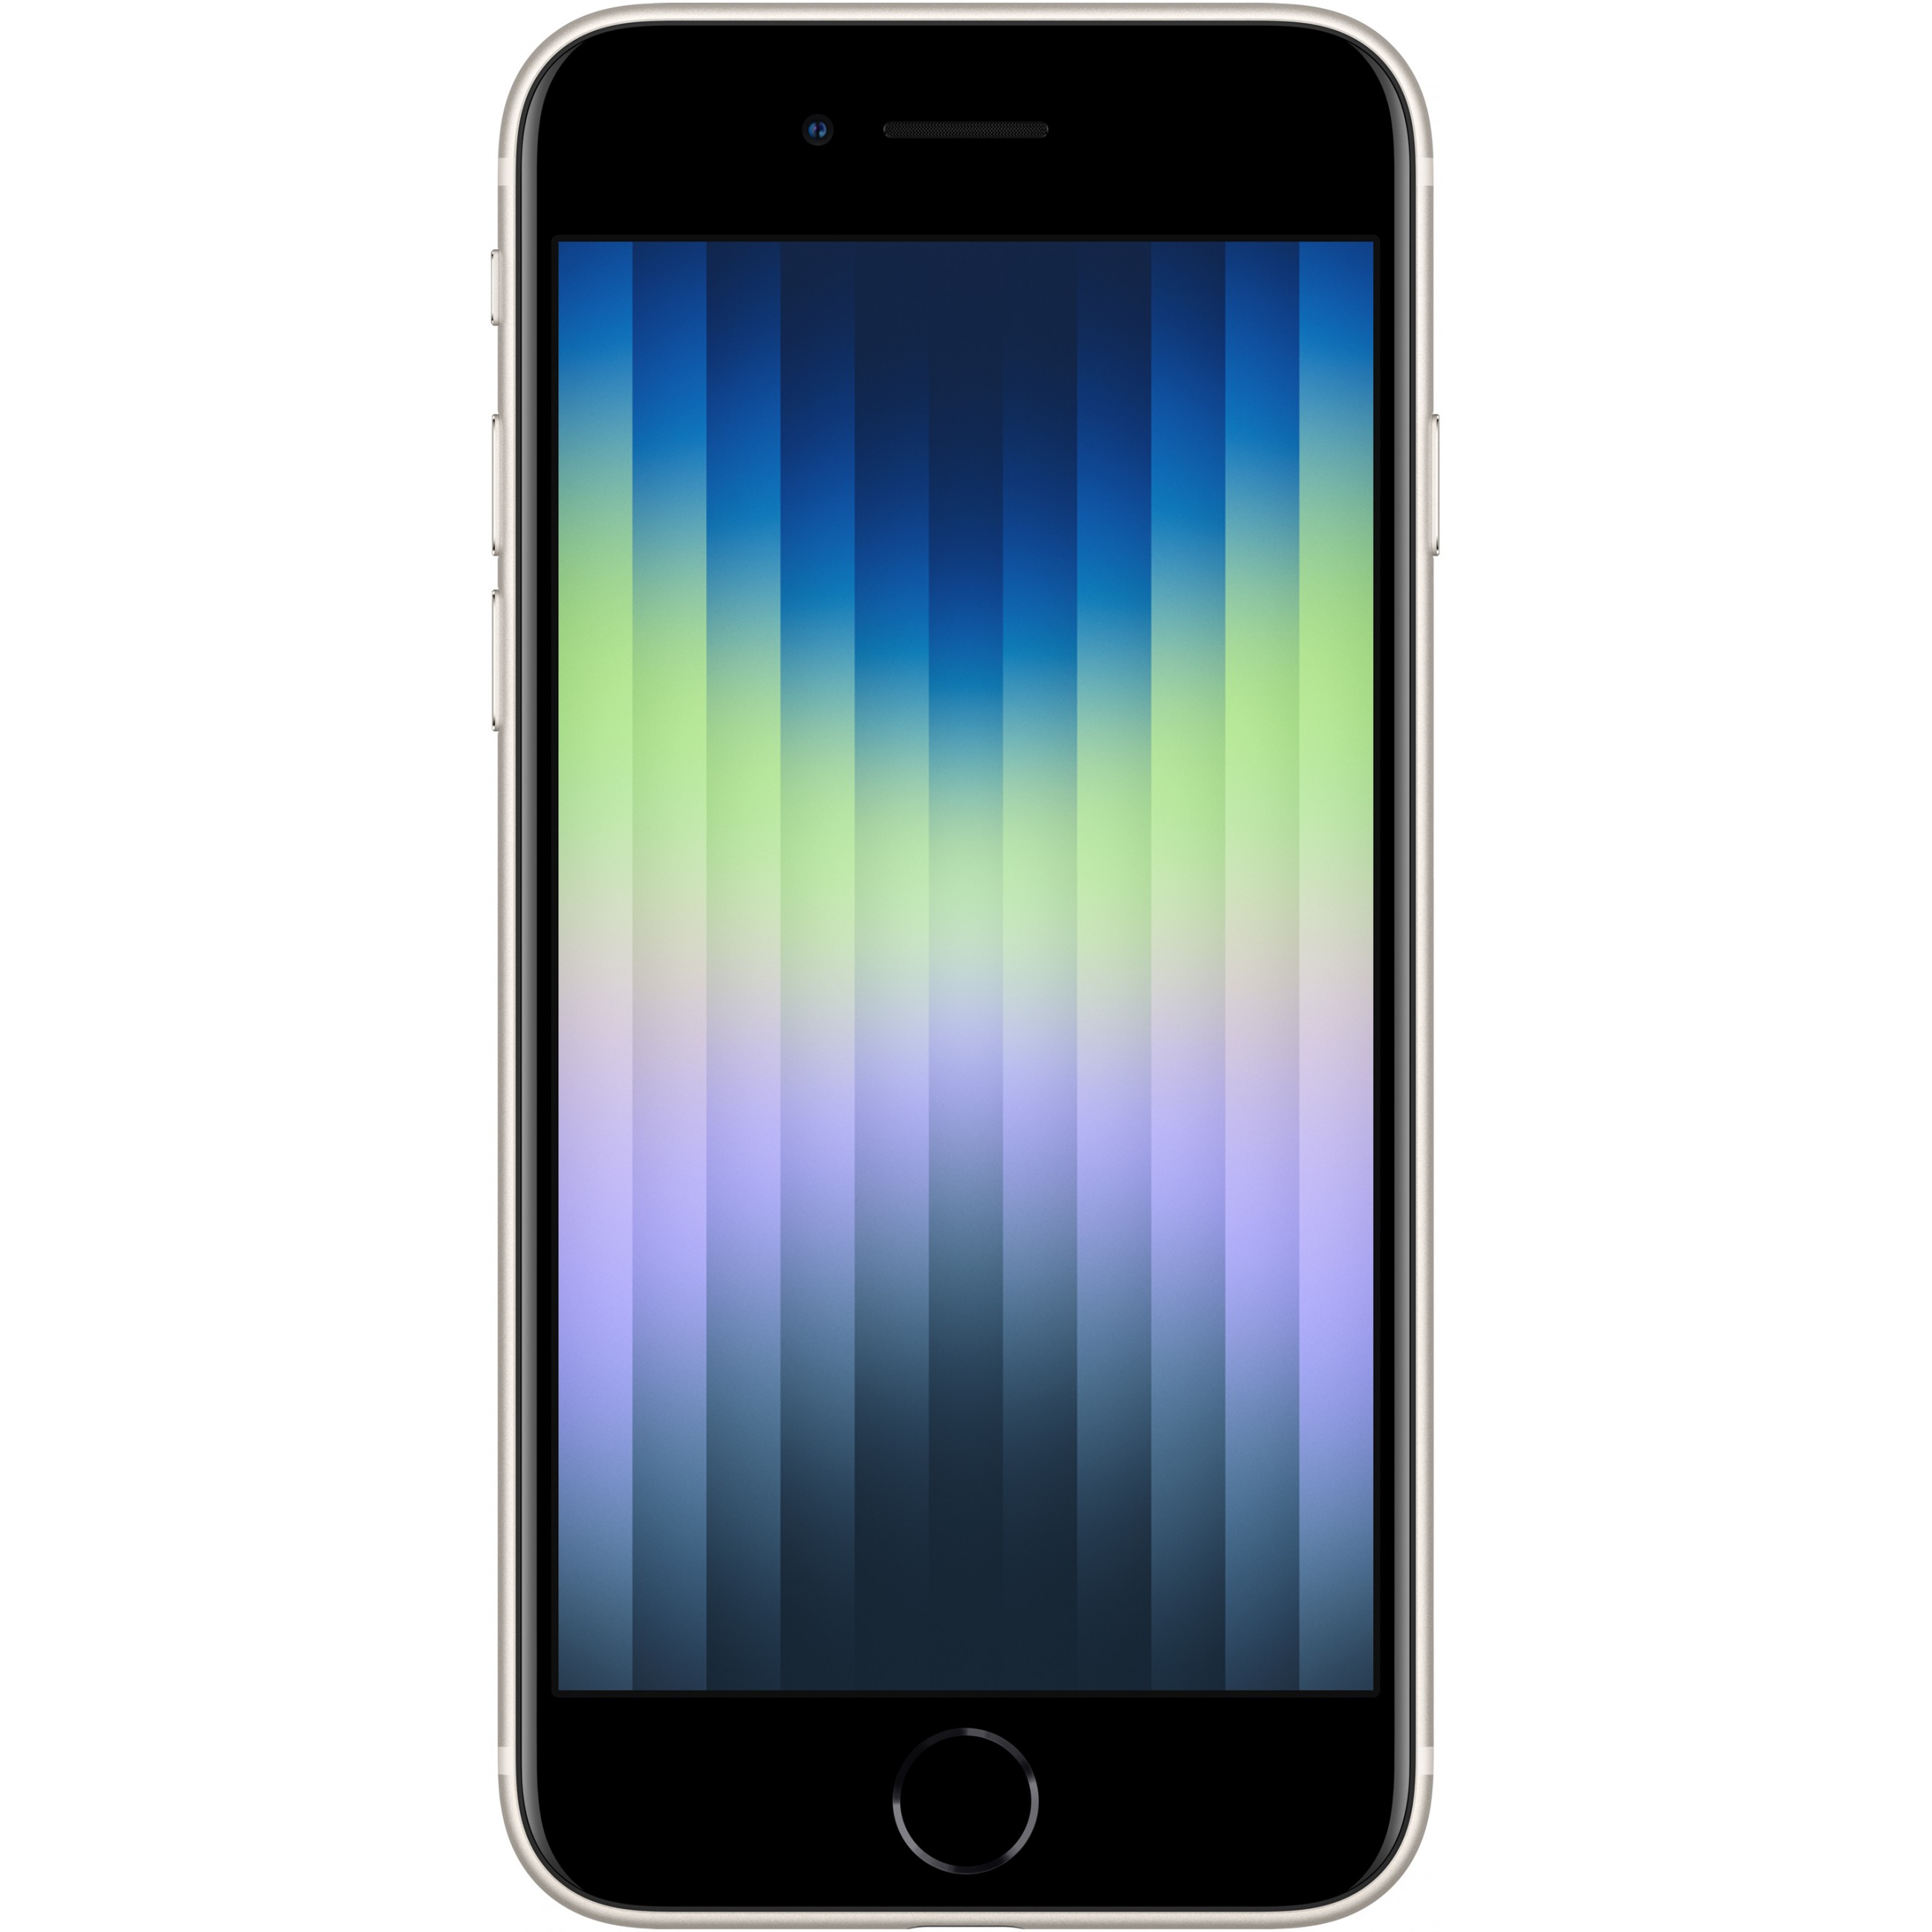 Apple iPhone SE 11,9 cm (4.7 Zoll) Dual-SIM iOS 15 5G 64 GB Weiß